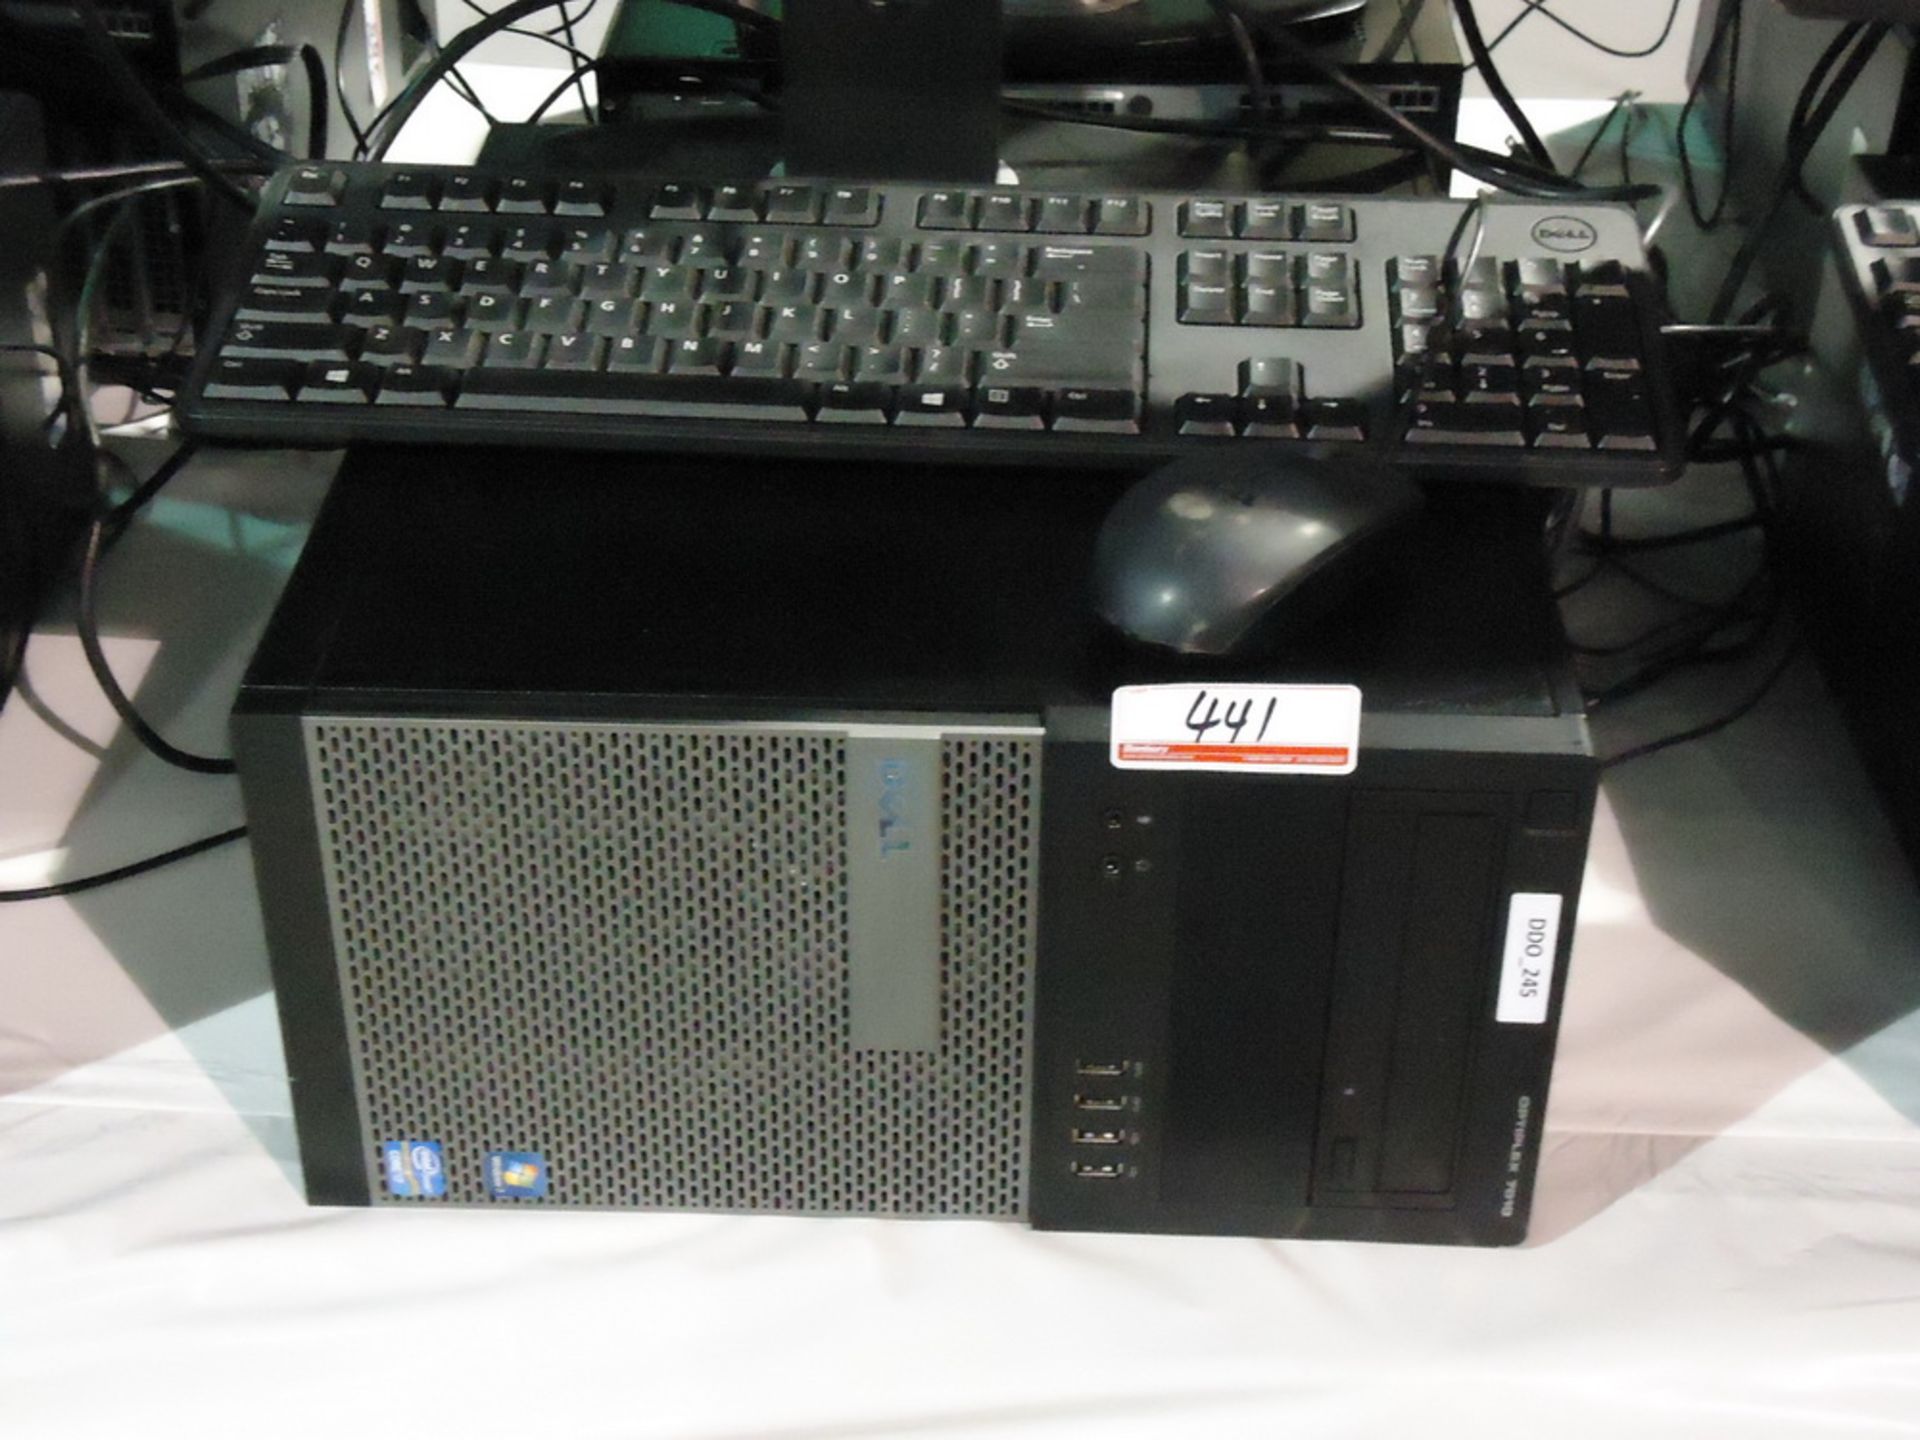 DELL OPTIPLEX 7010 TOWER PC C/W INTEL QUAD CORE I7 3770 3.40GHZ PROCESSOR, 8GB RAM, 500GB HDD, INTEL